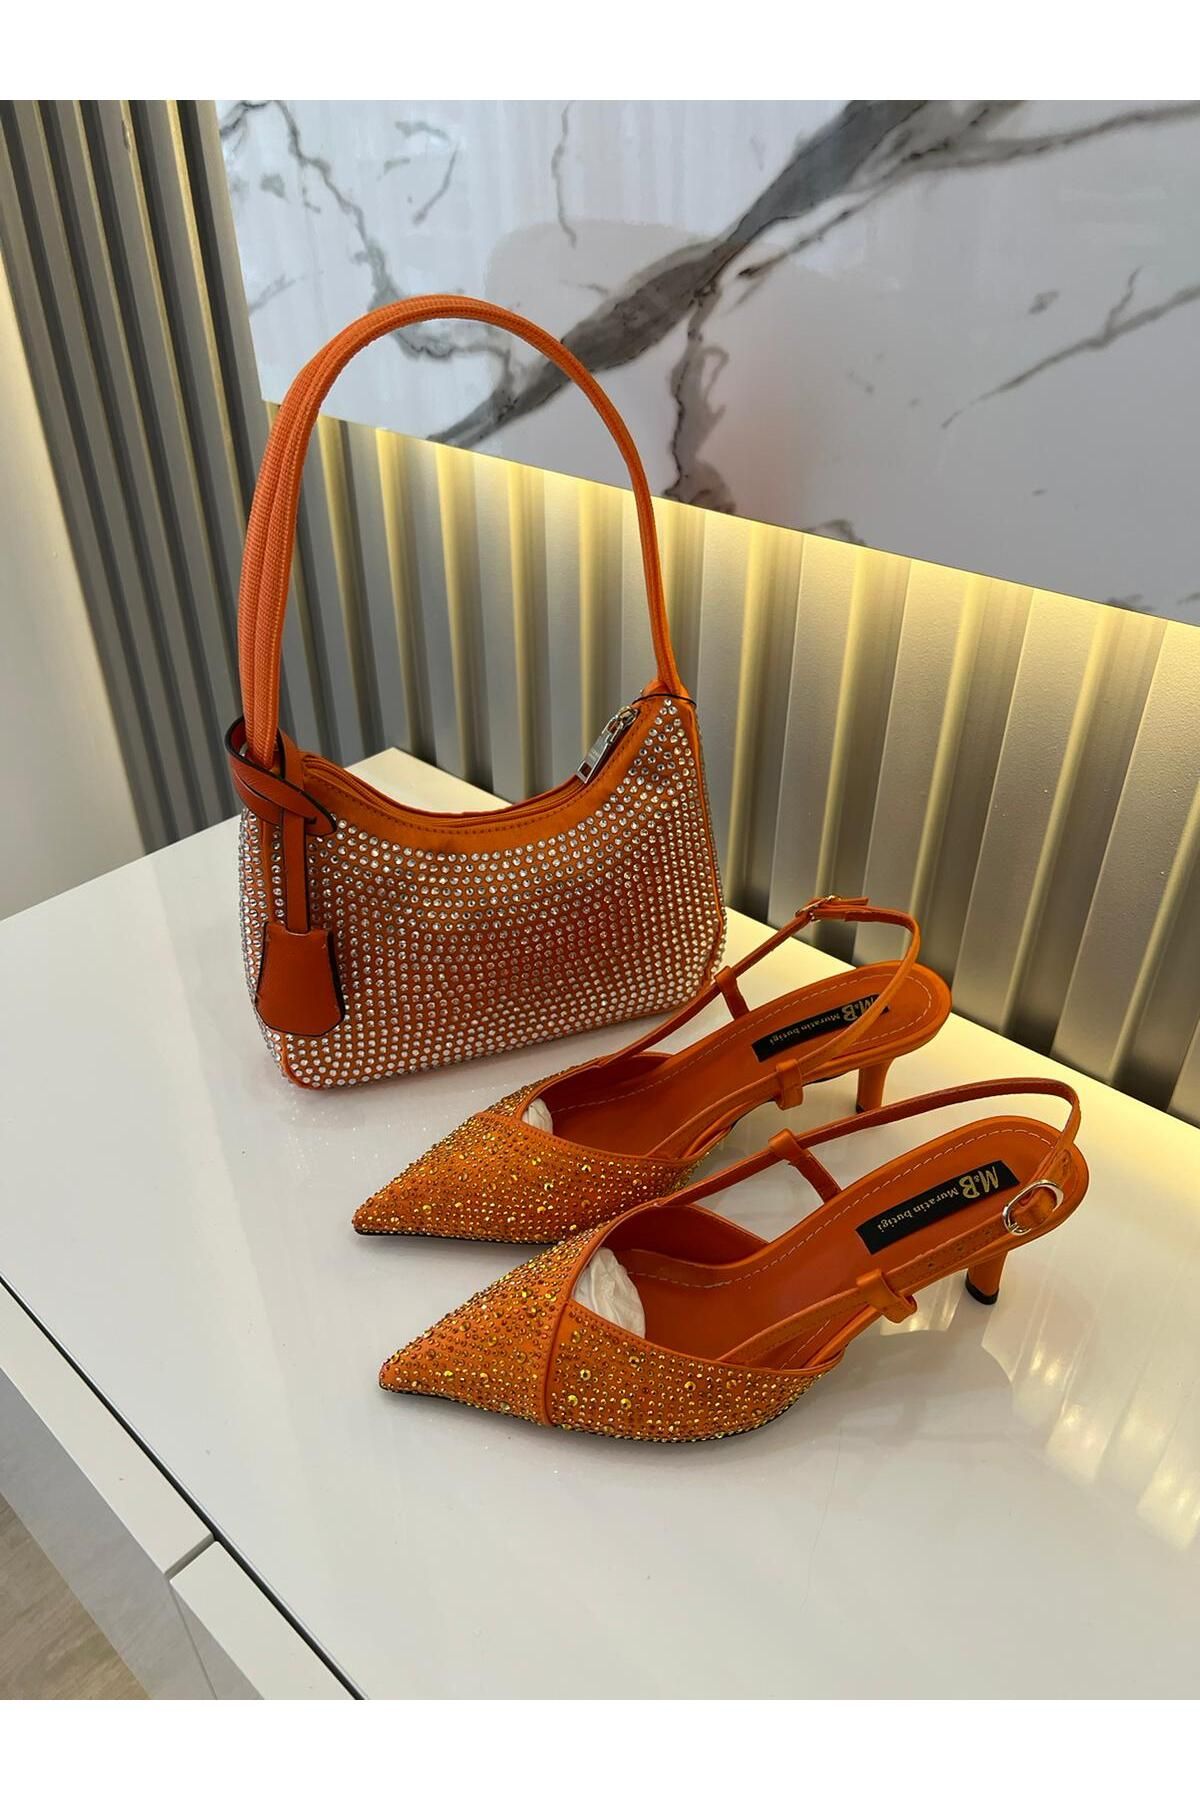 M&B Kadın 5 cm taşlı topuklu ayakkabı & çanta set